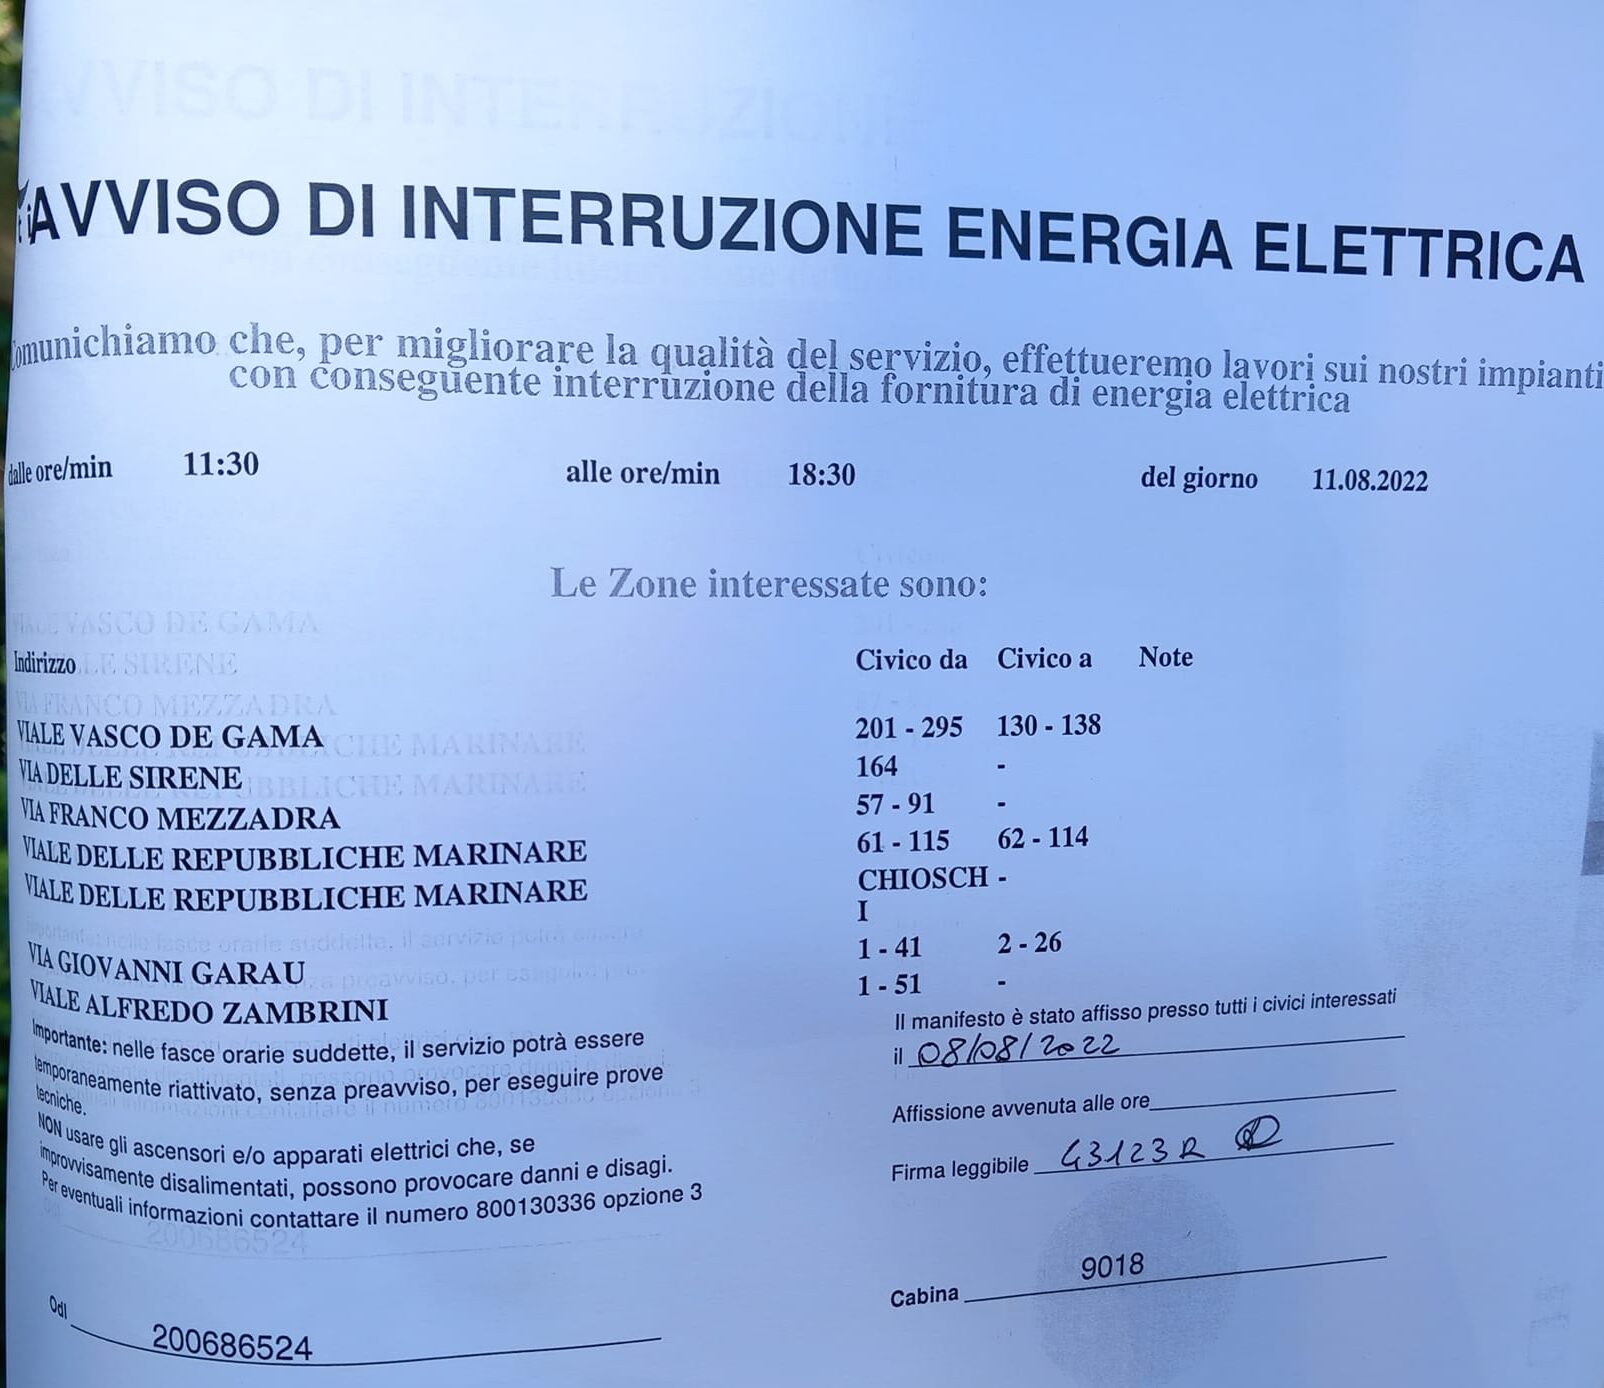 Avviso chiusura uffici per interruzione di energia elettrica dalle ore 8:30  alle ore 16:00 - Ordine dei Medici Chirurghi e Odontoiatri della provincia  di Catania